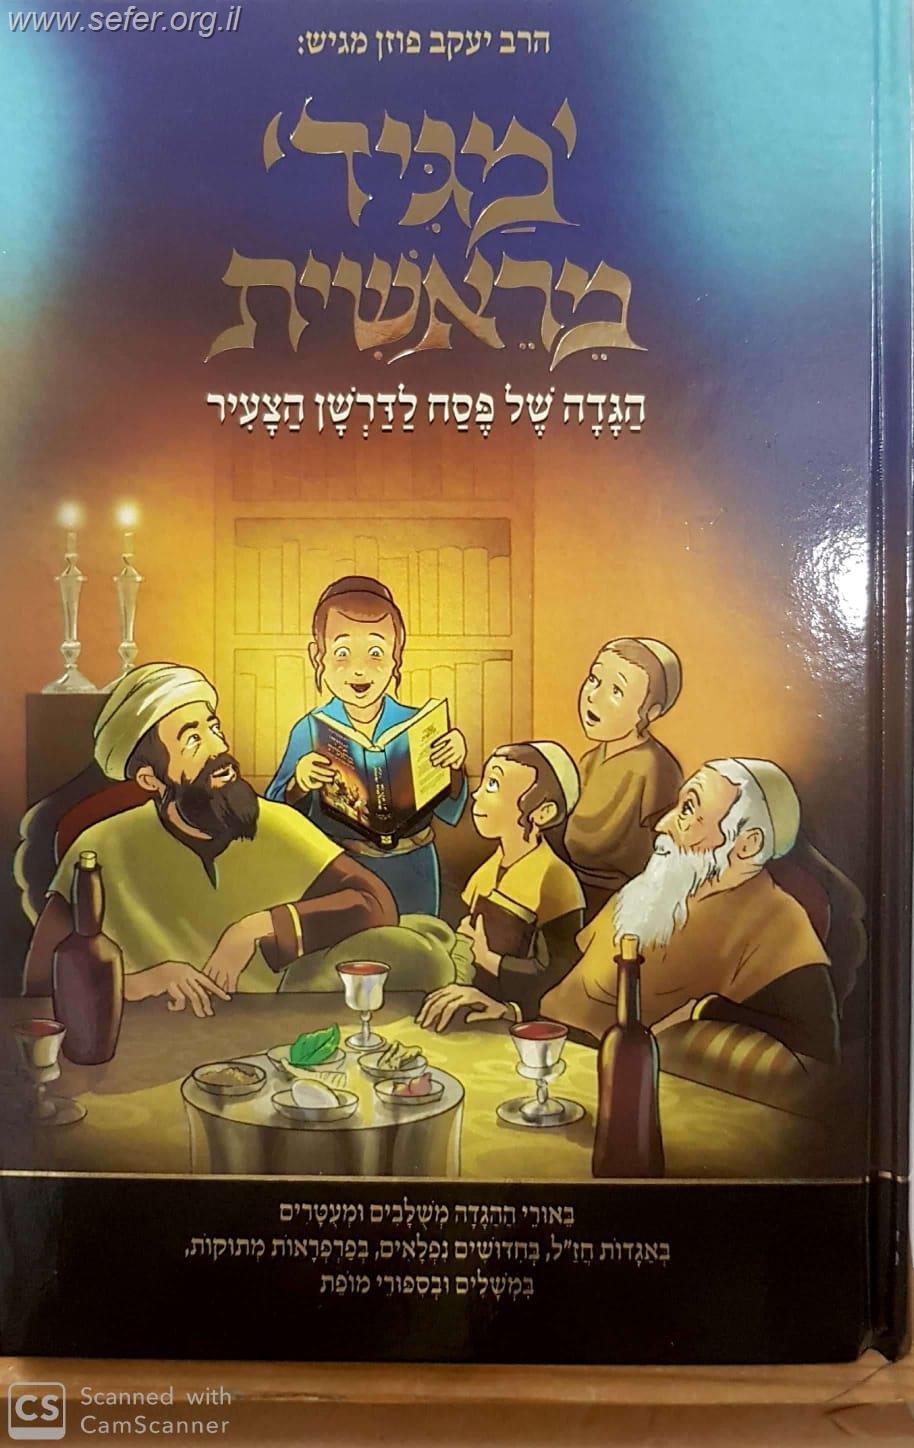 מגיד מראשית  - הגדה  של פסח לדרשן הצעיר / הרב יעקב פוזן